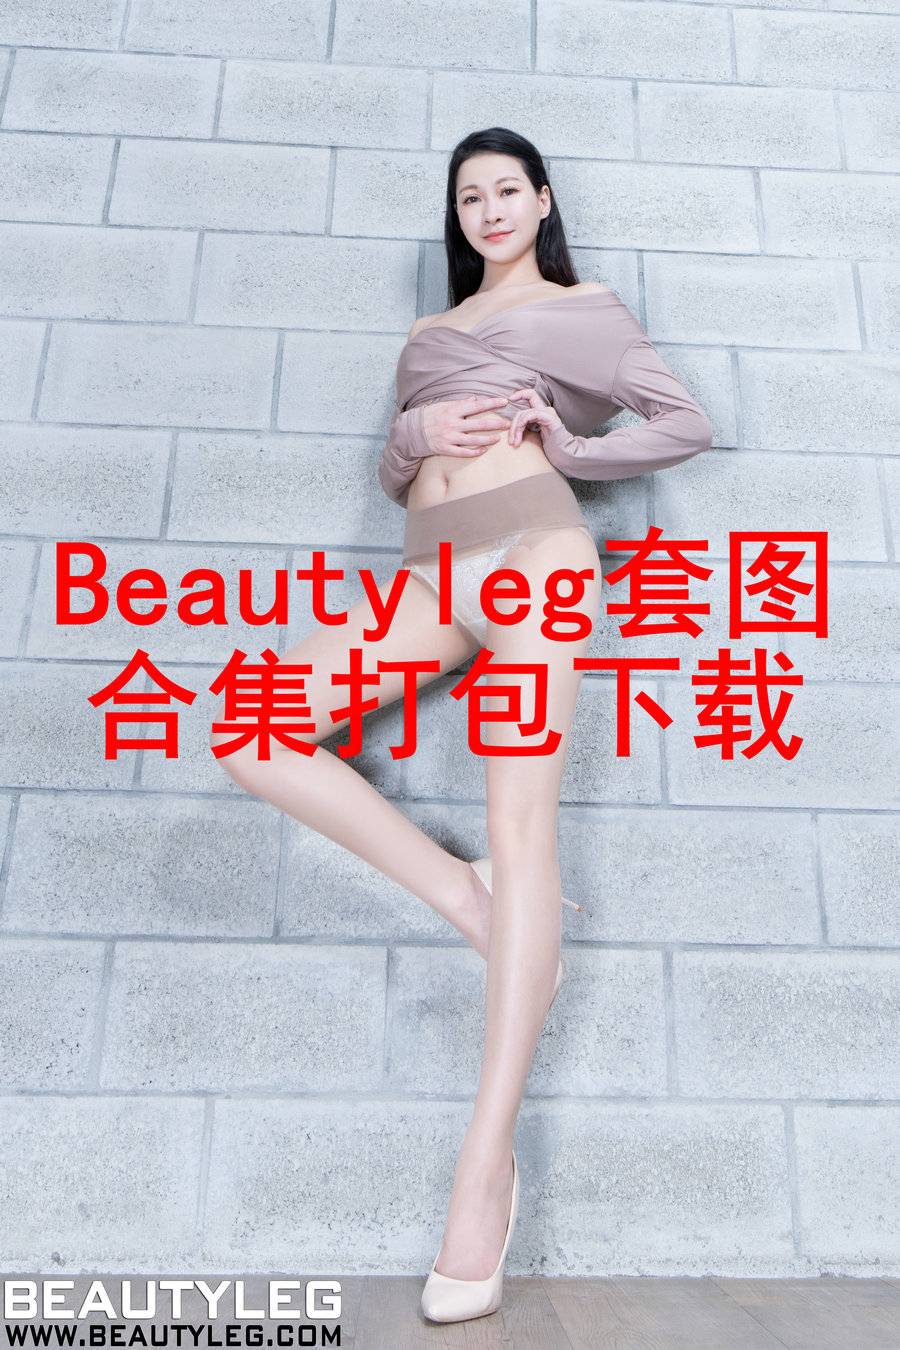 [Beautyleg]台湾美腿写真全站套图合集打包下载专贴更新中...